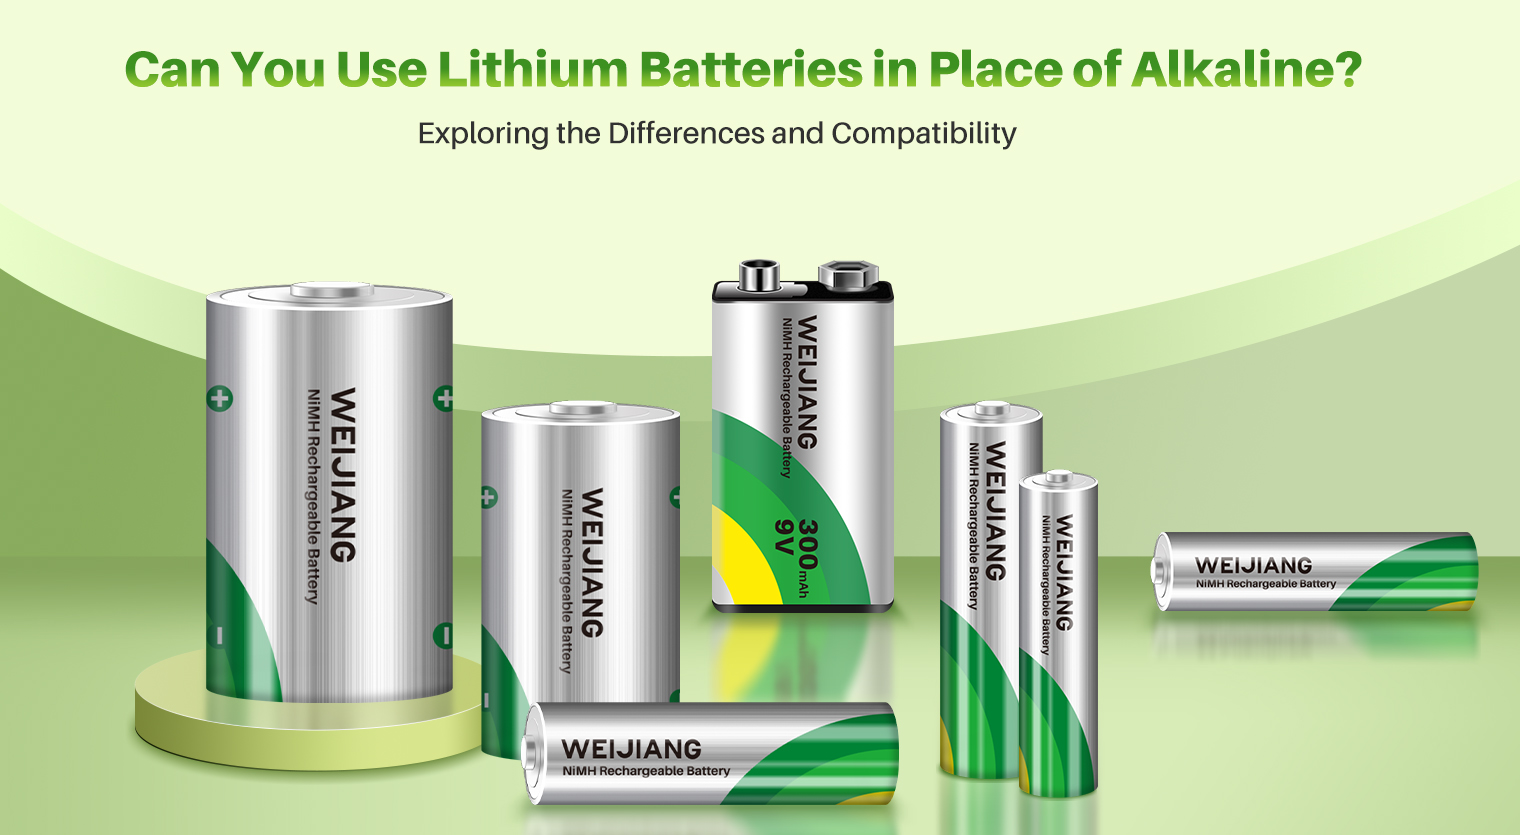 क्या आप अंतर और अनुकूलता की खोज करते हुए क्षारीय के स्थान पर लिथियम बैटरियों का उपयोग कर सकते हैं